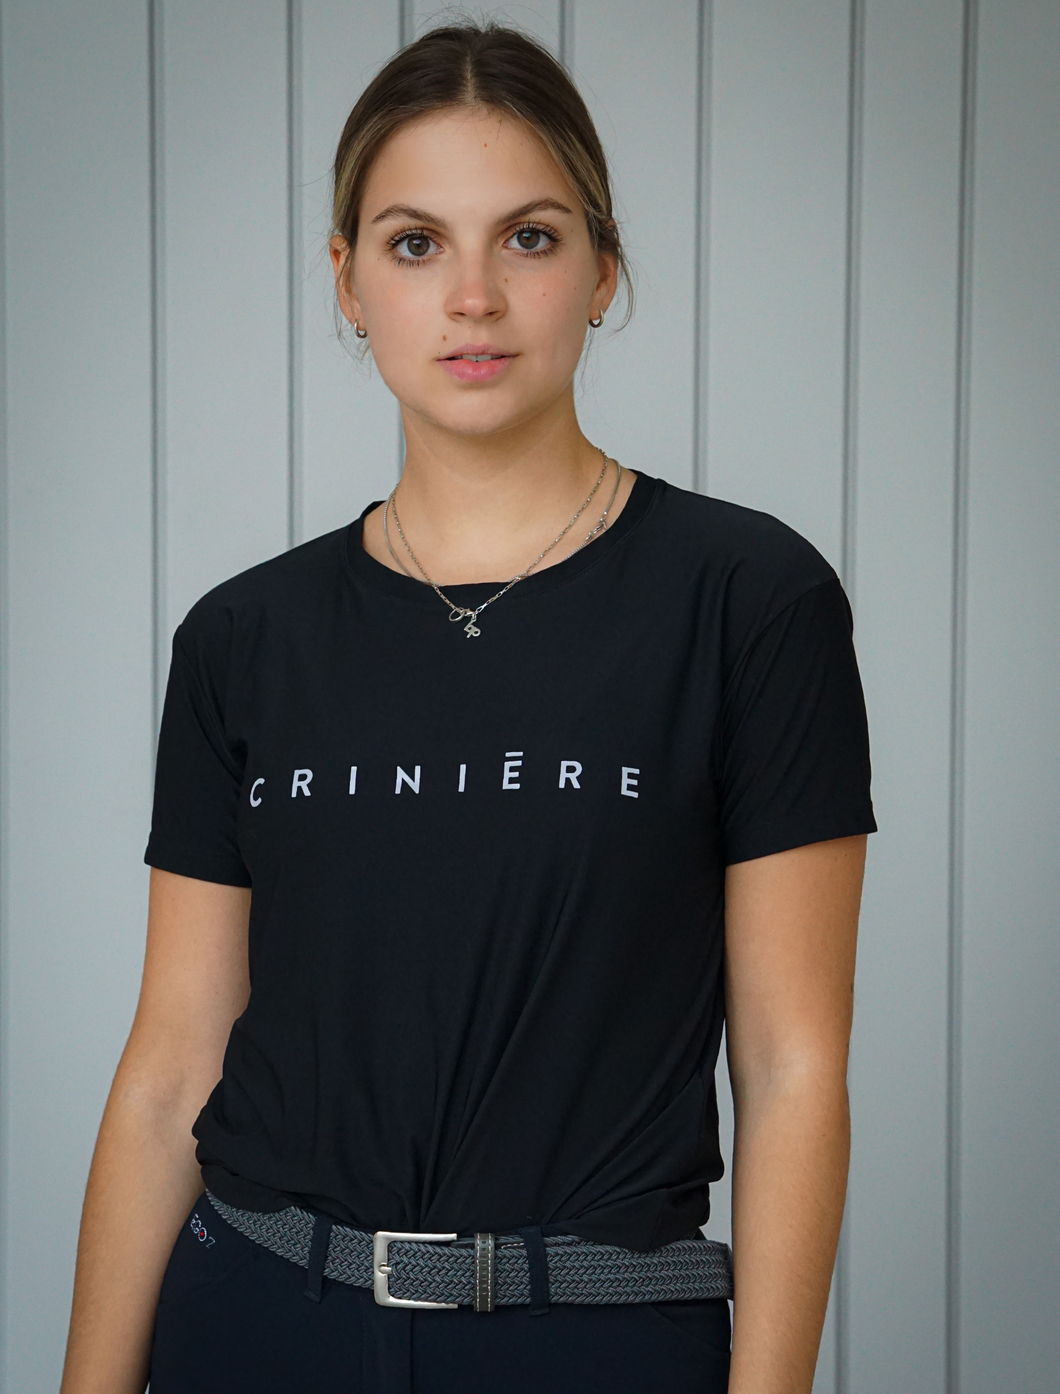 Criniere T-Shirt